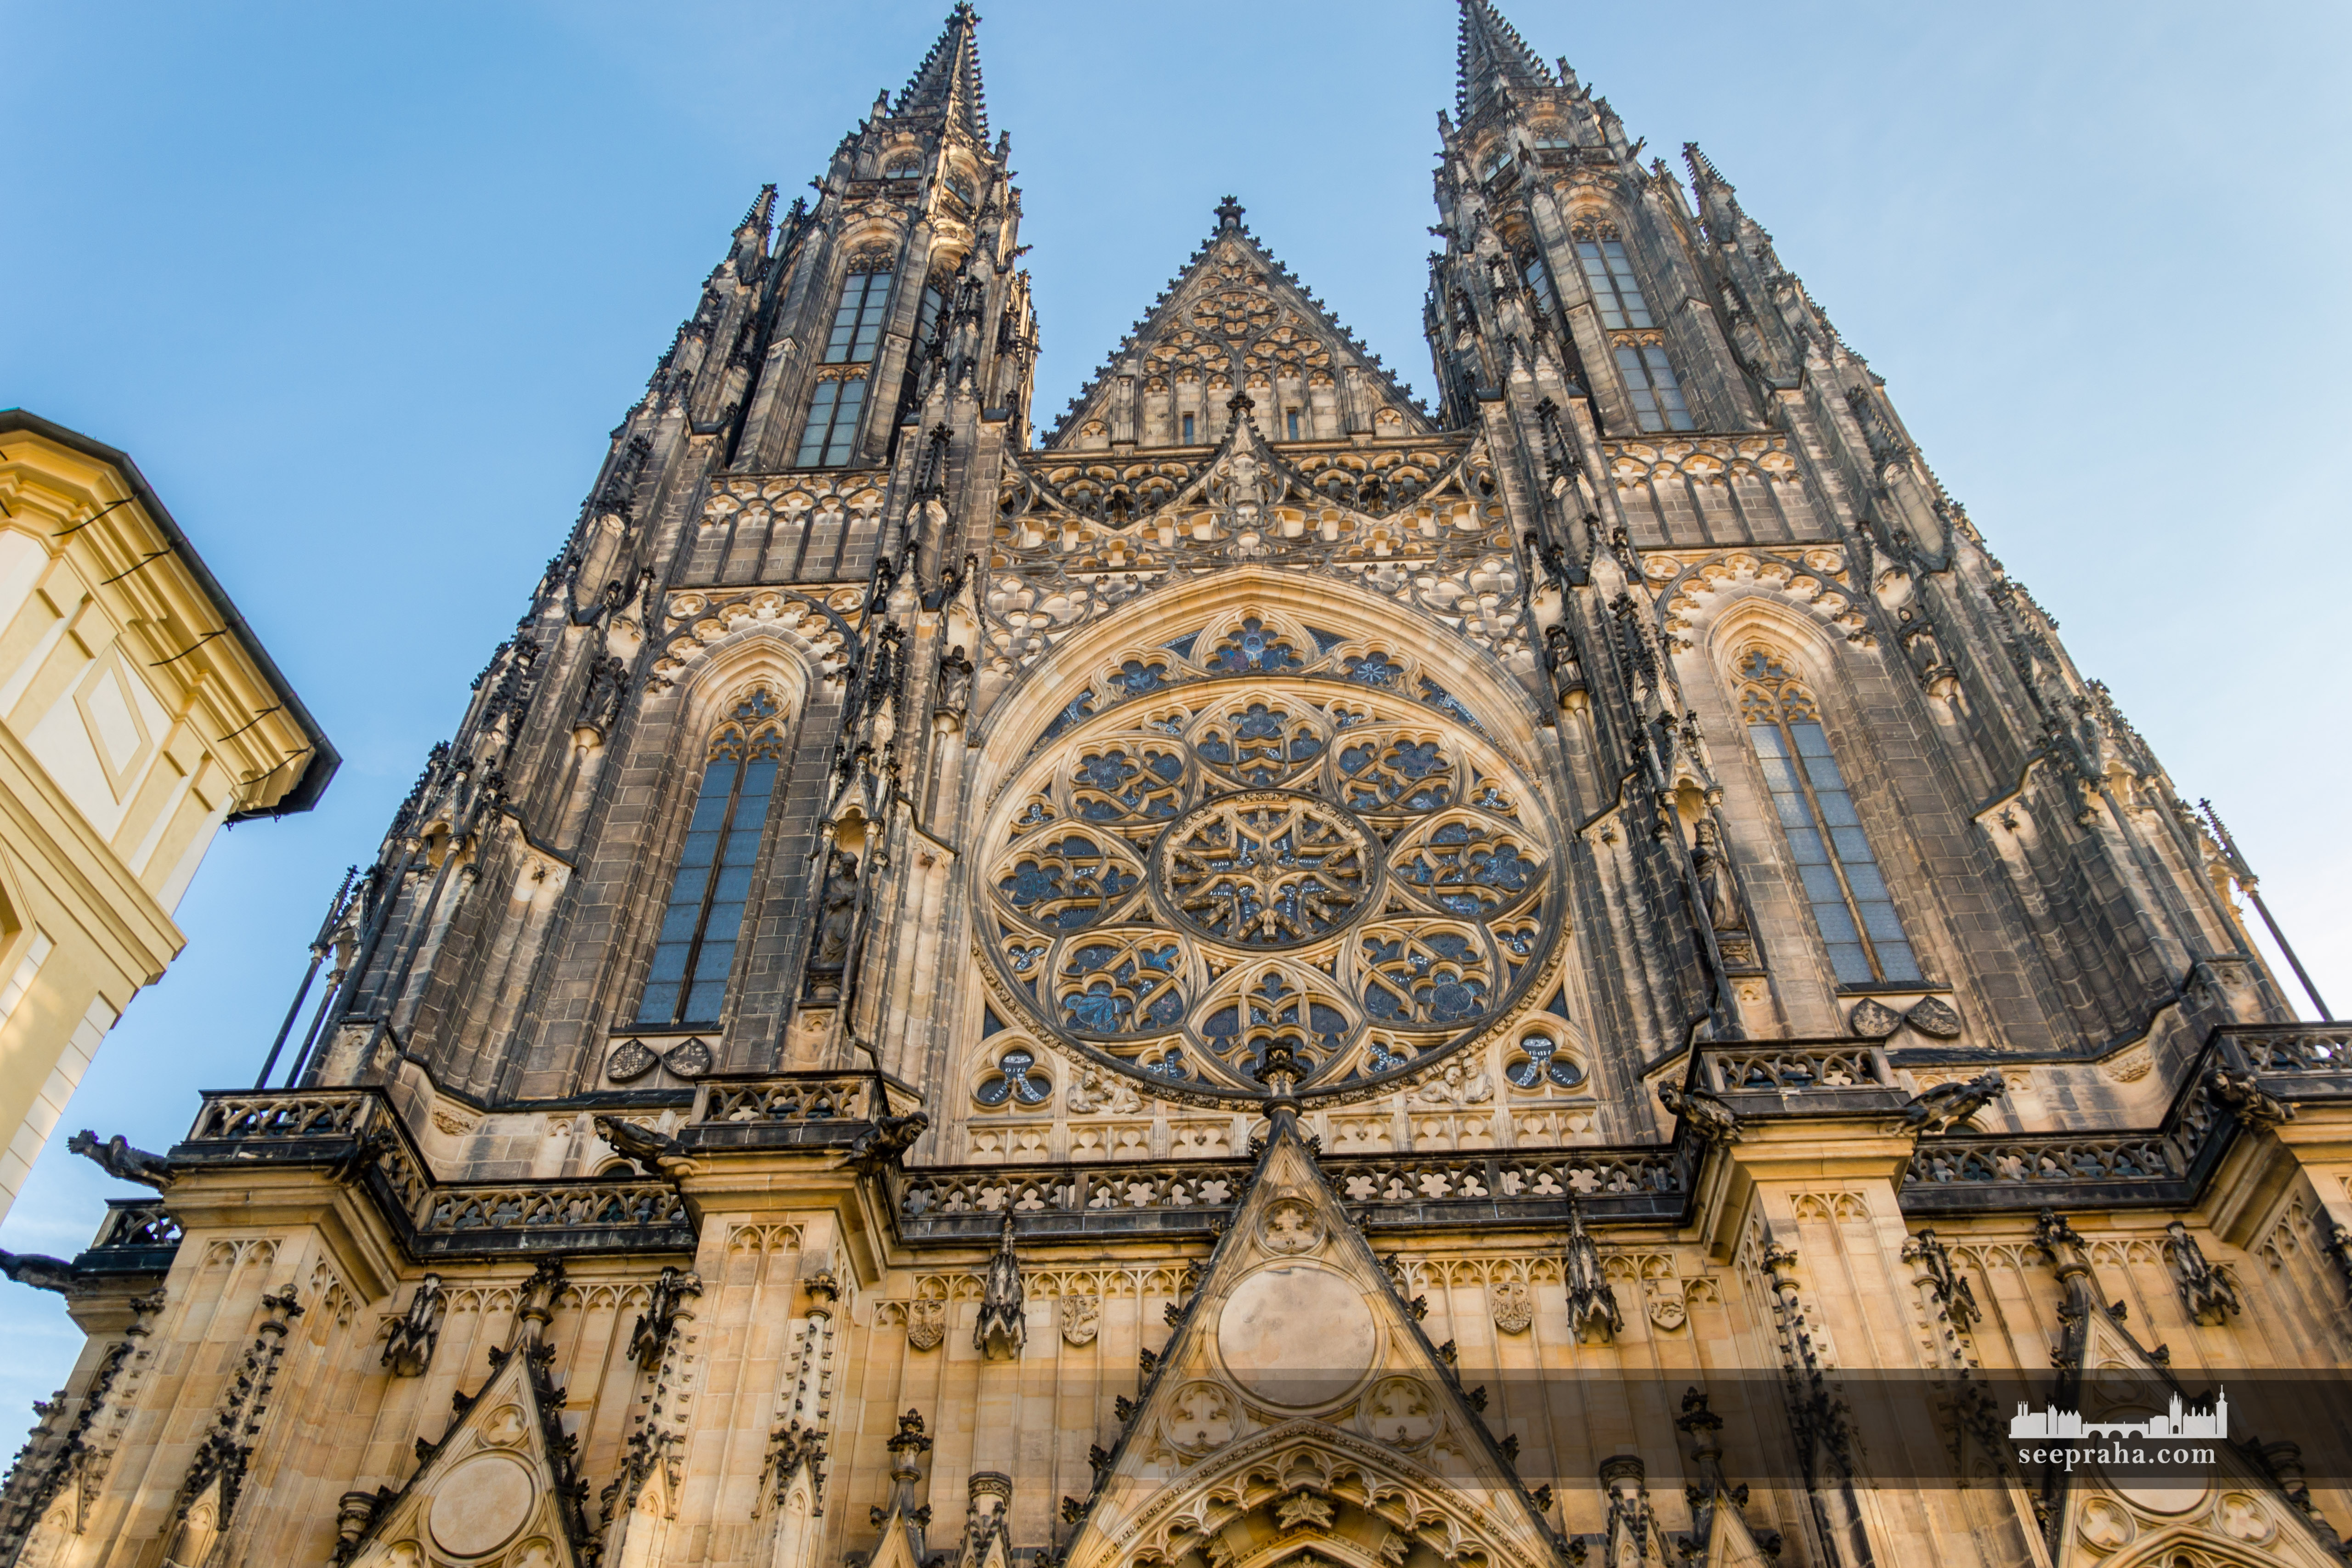 Katedra św. Wita, Praga, Czechy